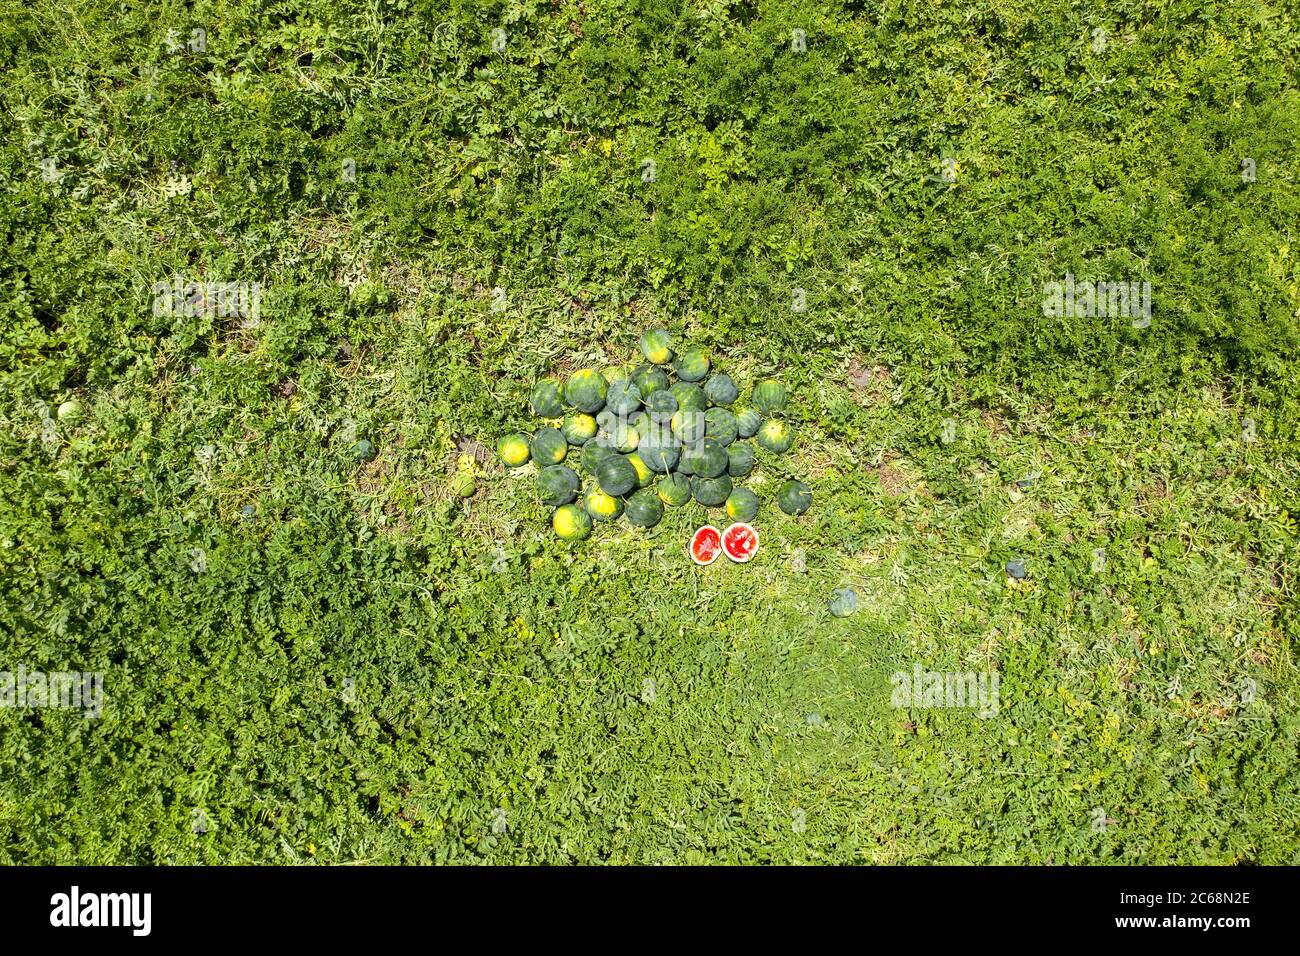 Groupe d'aquarelles mûres dans un champ, image aérienne. Banque D'Images